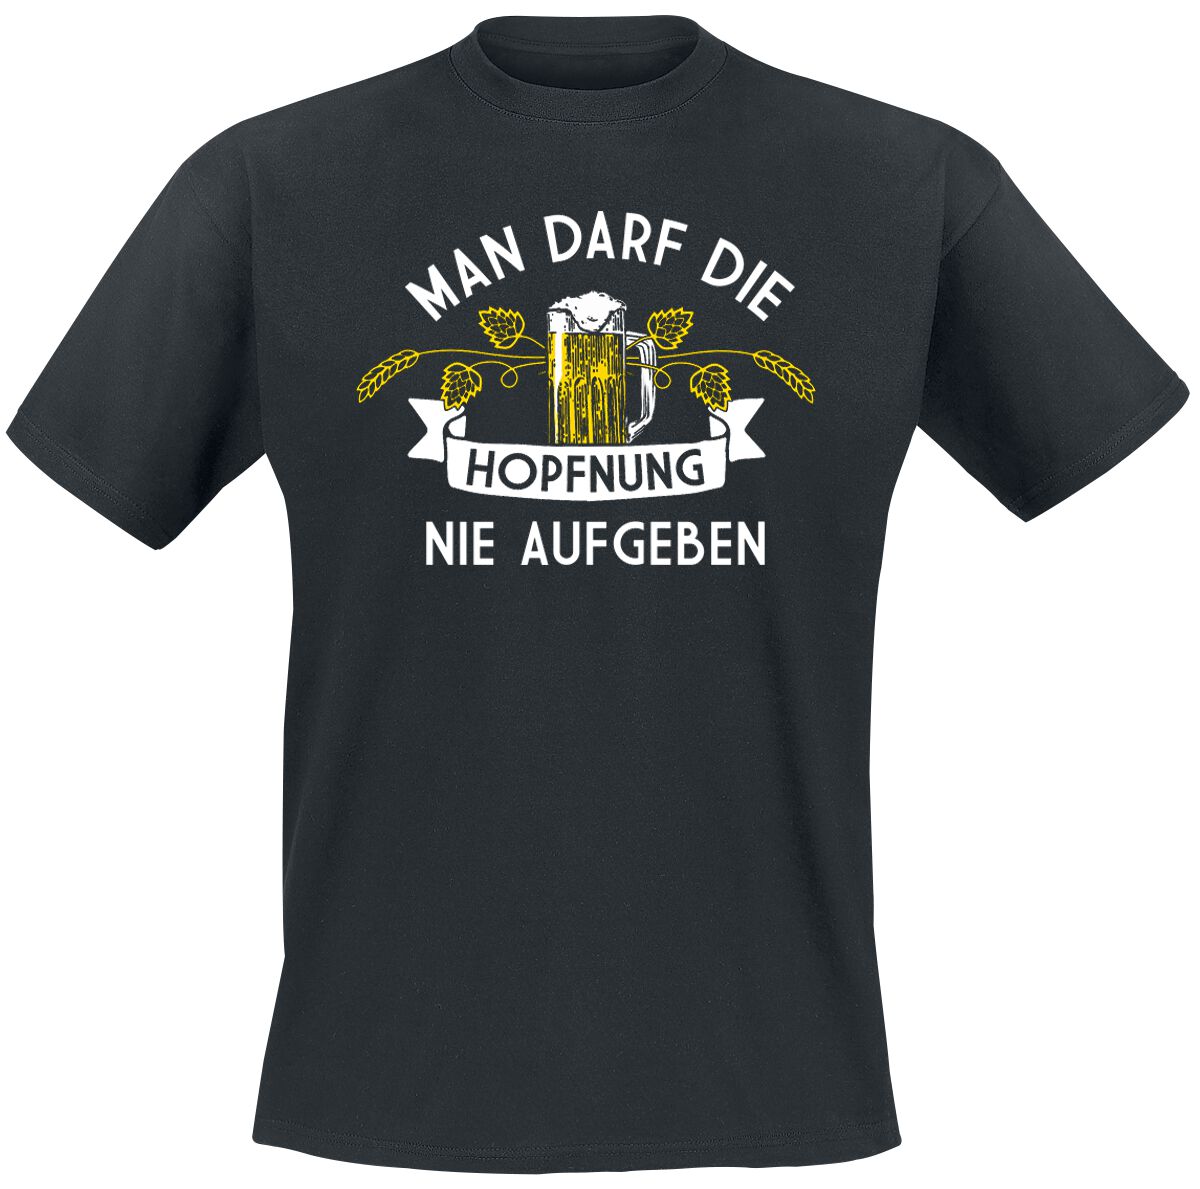 Alkohol & Party T-Shirt - Man darf die Hopfnung nie aufgeben - M bis 5XL - für Männer - Größe 4XL - schwarz von Alkohol & Party